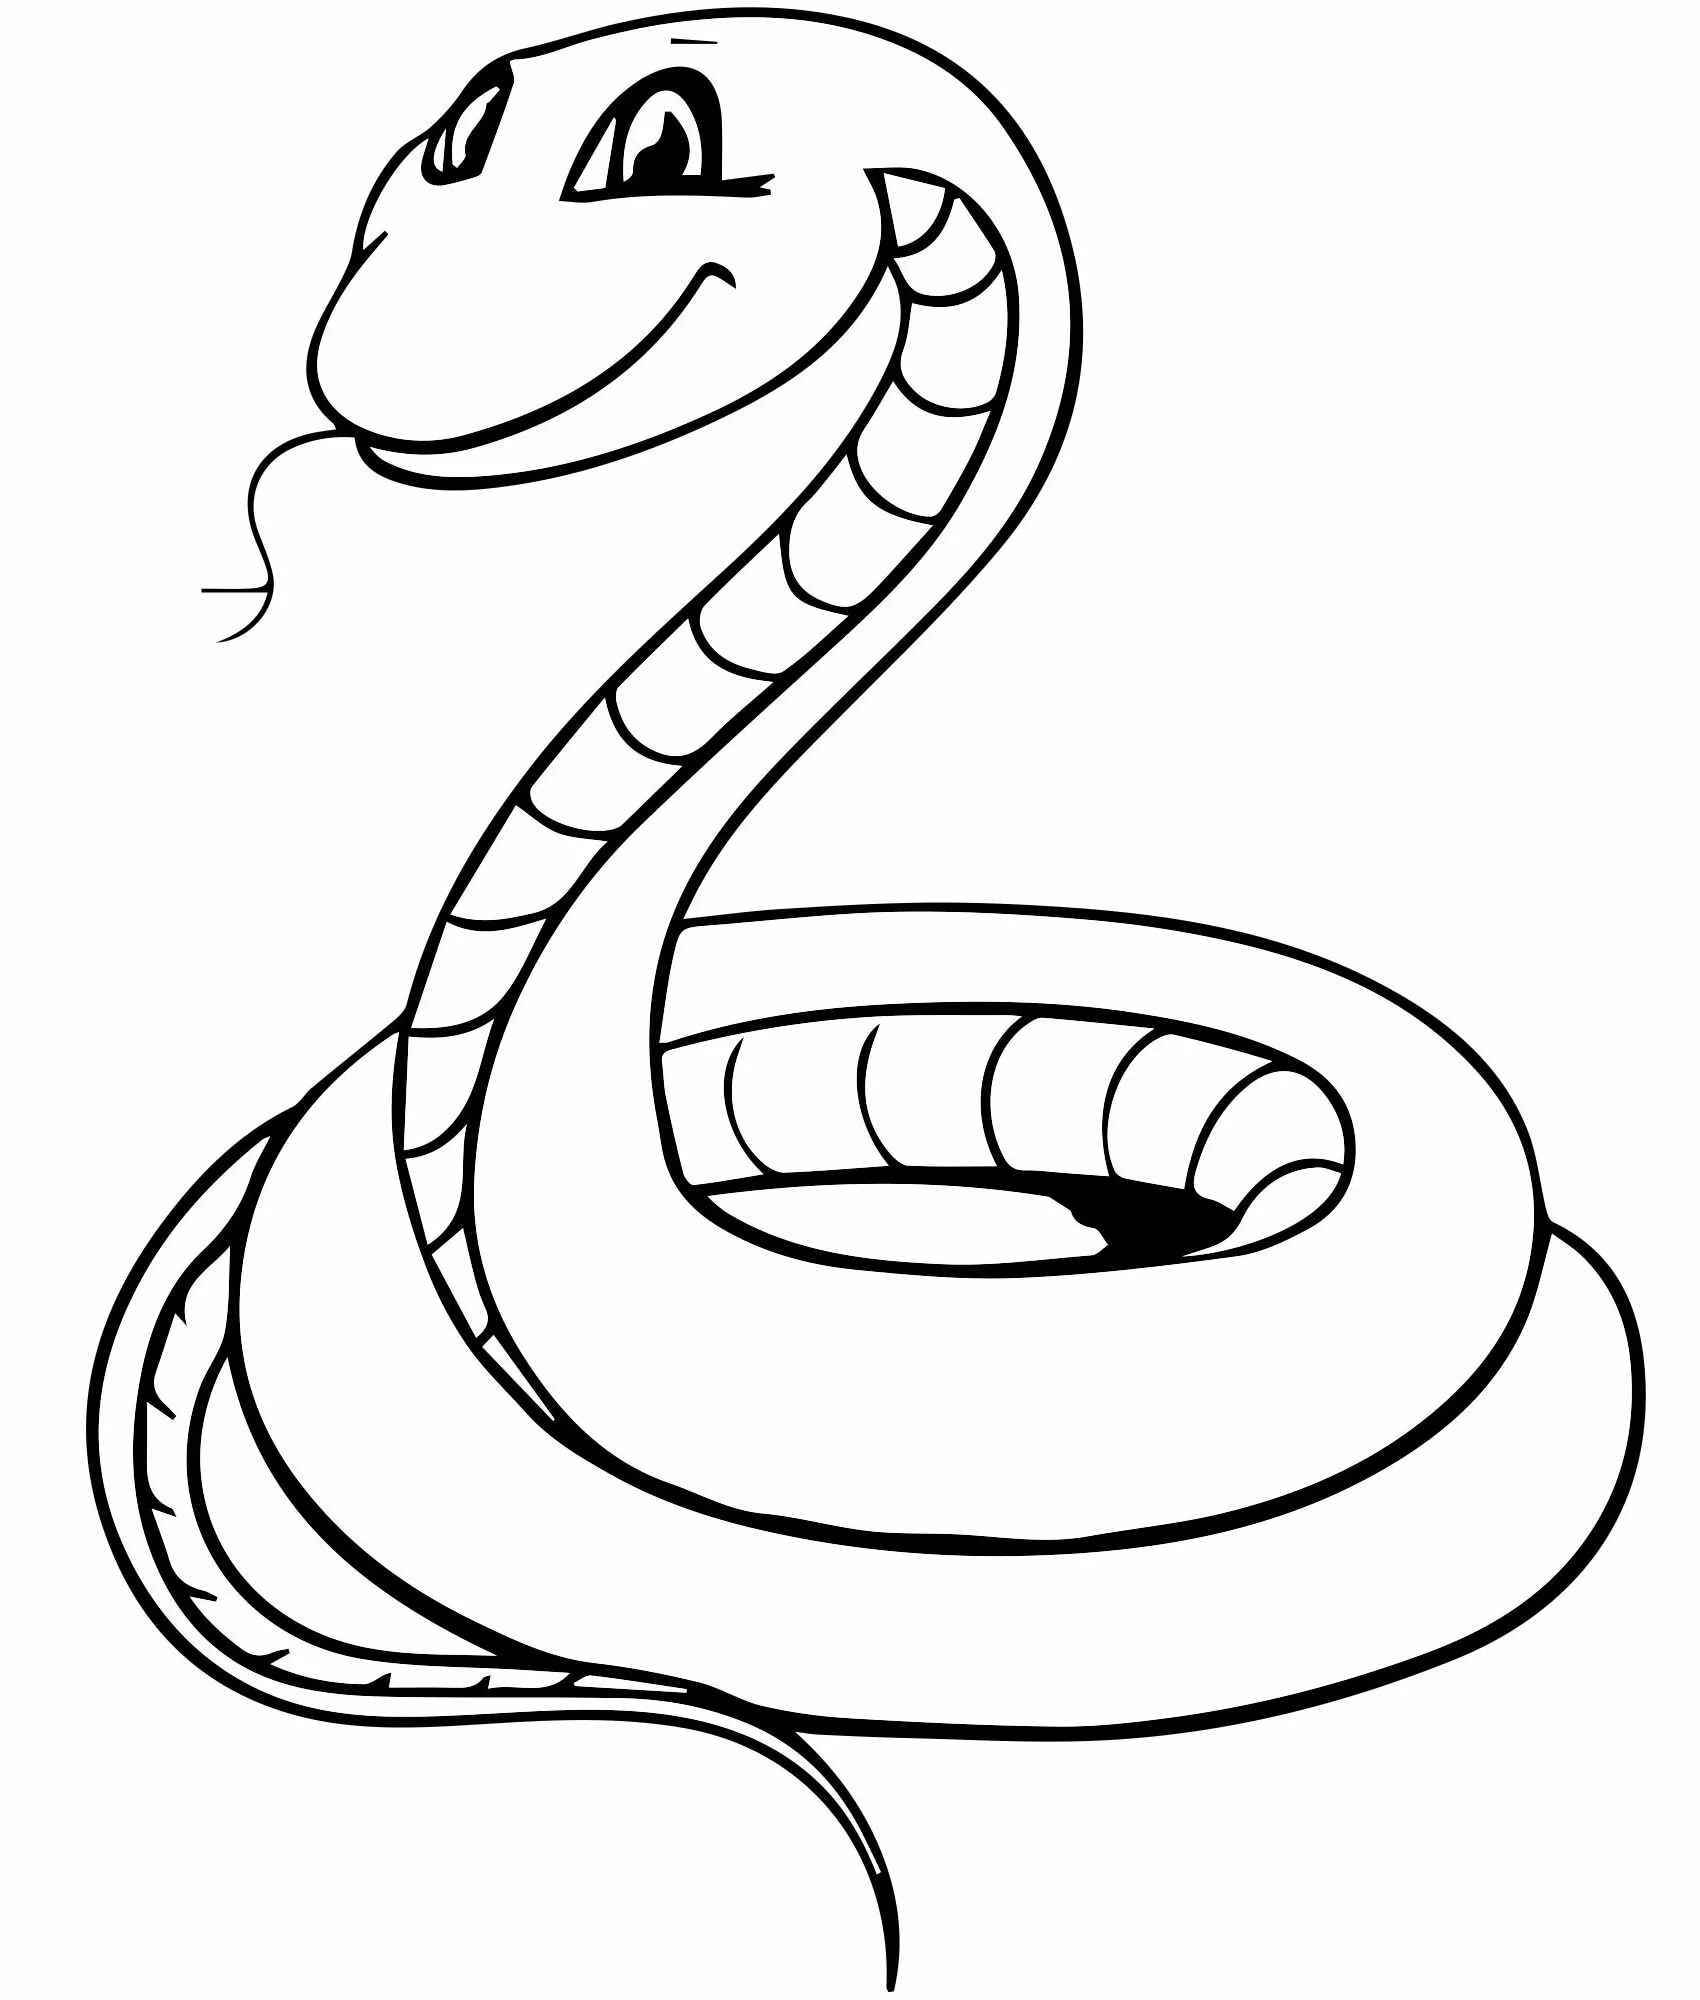 Змея раскраска для детей. Раскраска змеи для детей. Раскраска о змеях. Змея картинка раскраска. Раскраска змей для детей